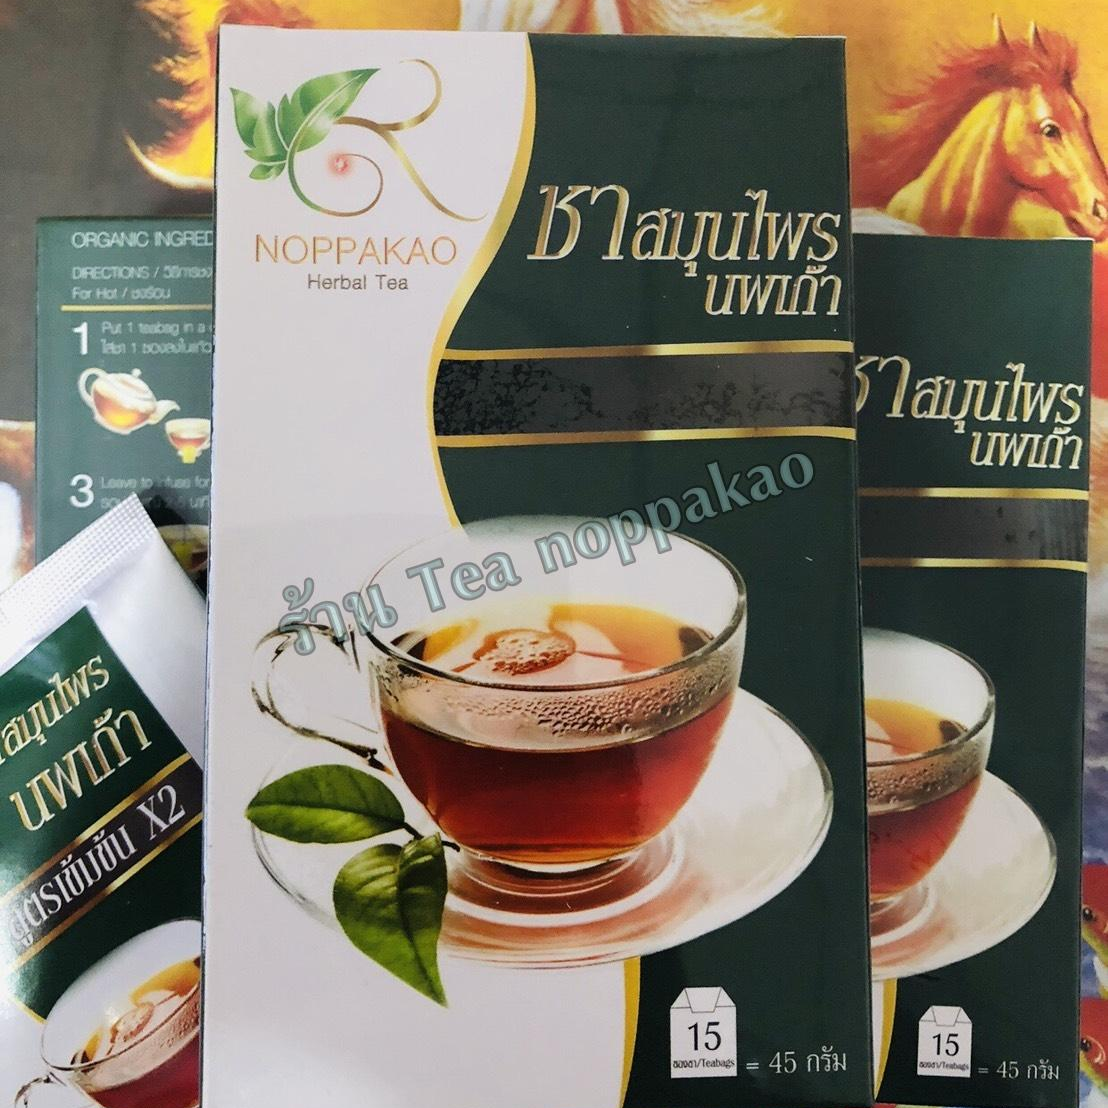 ชานพเก้า ชา นพเก้า ชาสมุนไพร ชาไทย สมุนไพรไทย tea noppakao ดูแลสุขภาพ ชนิดชงดื่ม กระเจี๊ยบ หญ้าหวาน ดอกคำฝอย ของแท้ ขายดี